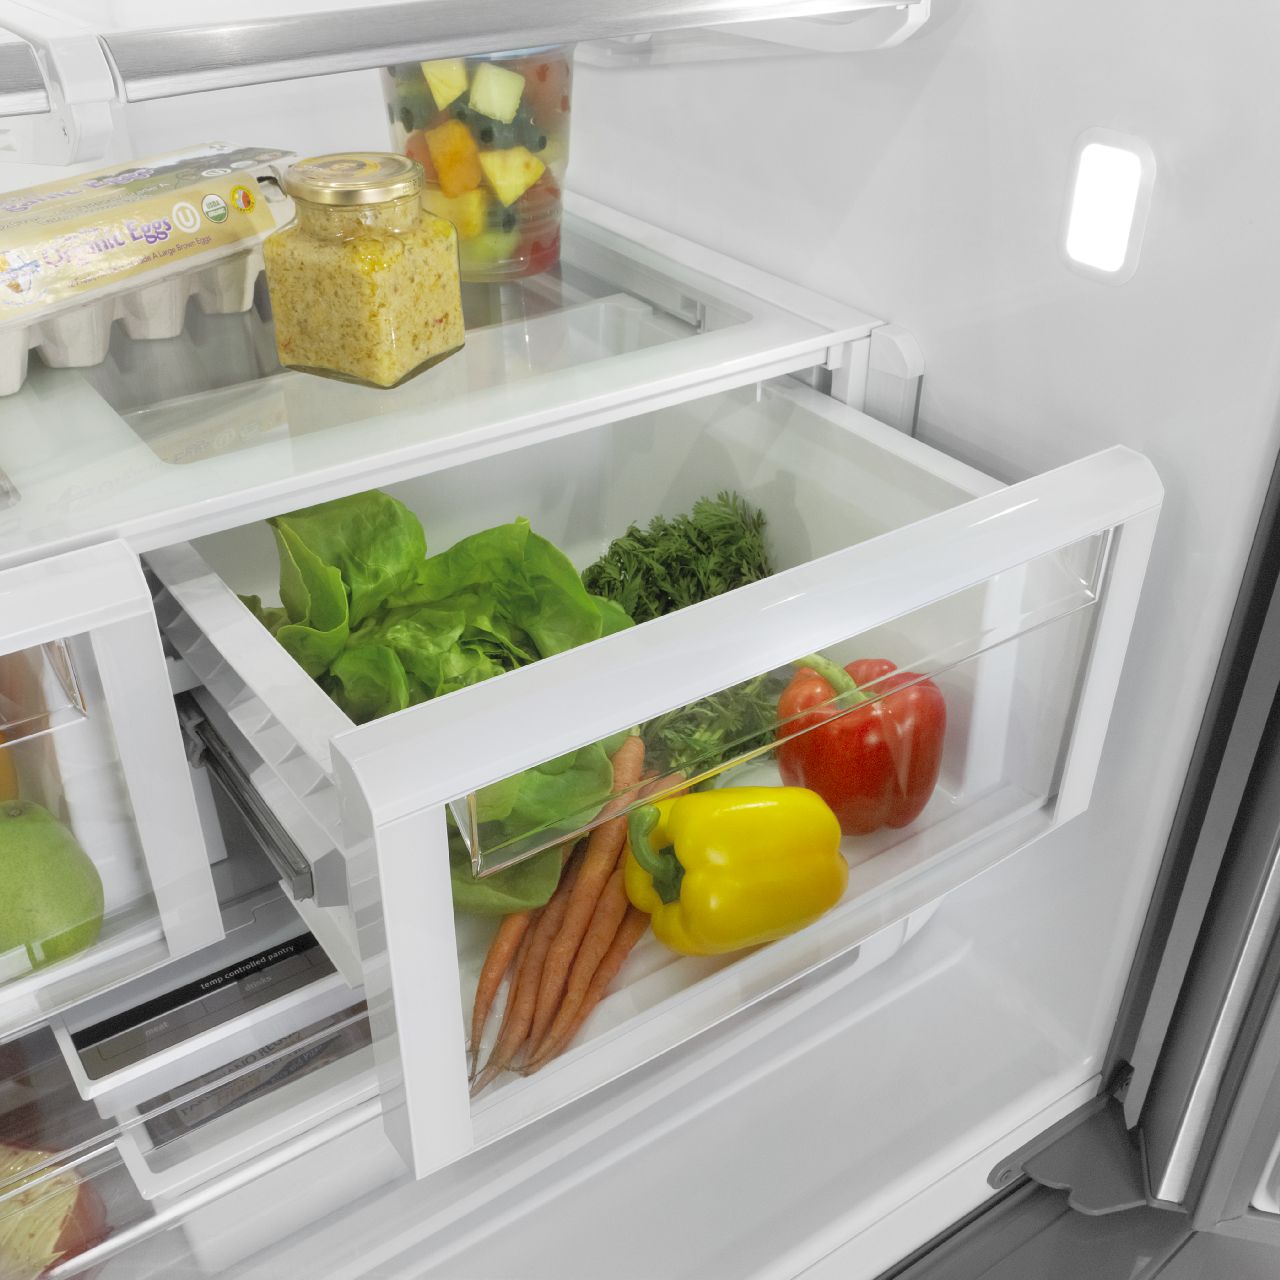 How to Use a Refrigerator Crisper Drawer